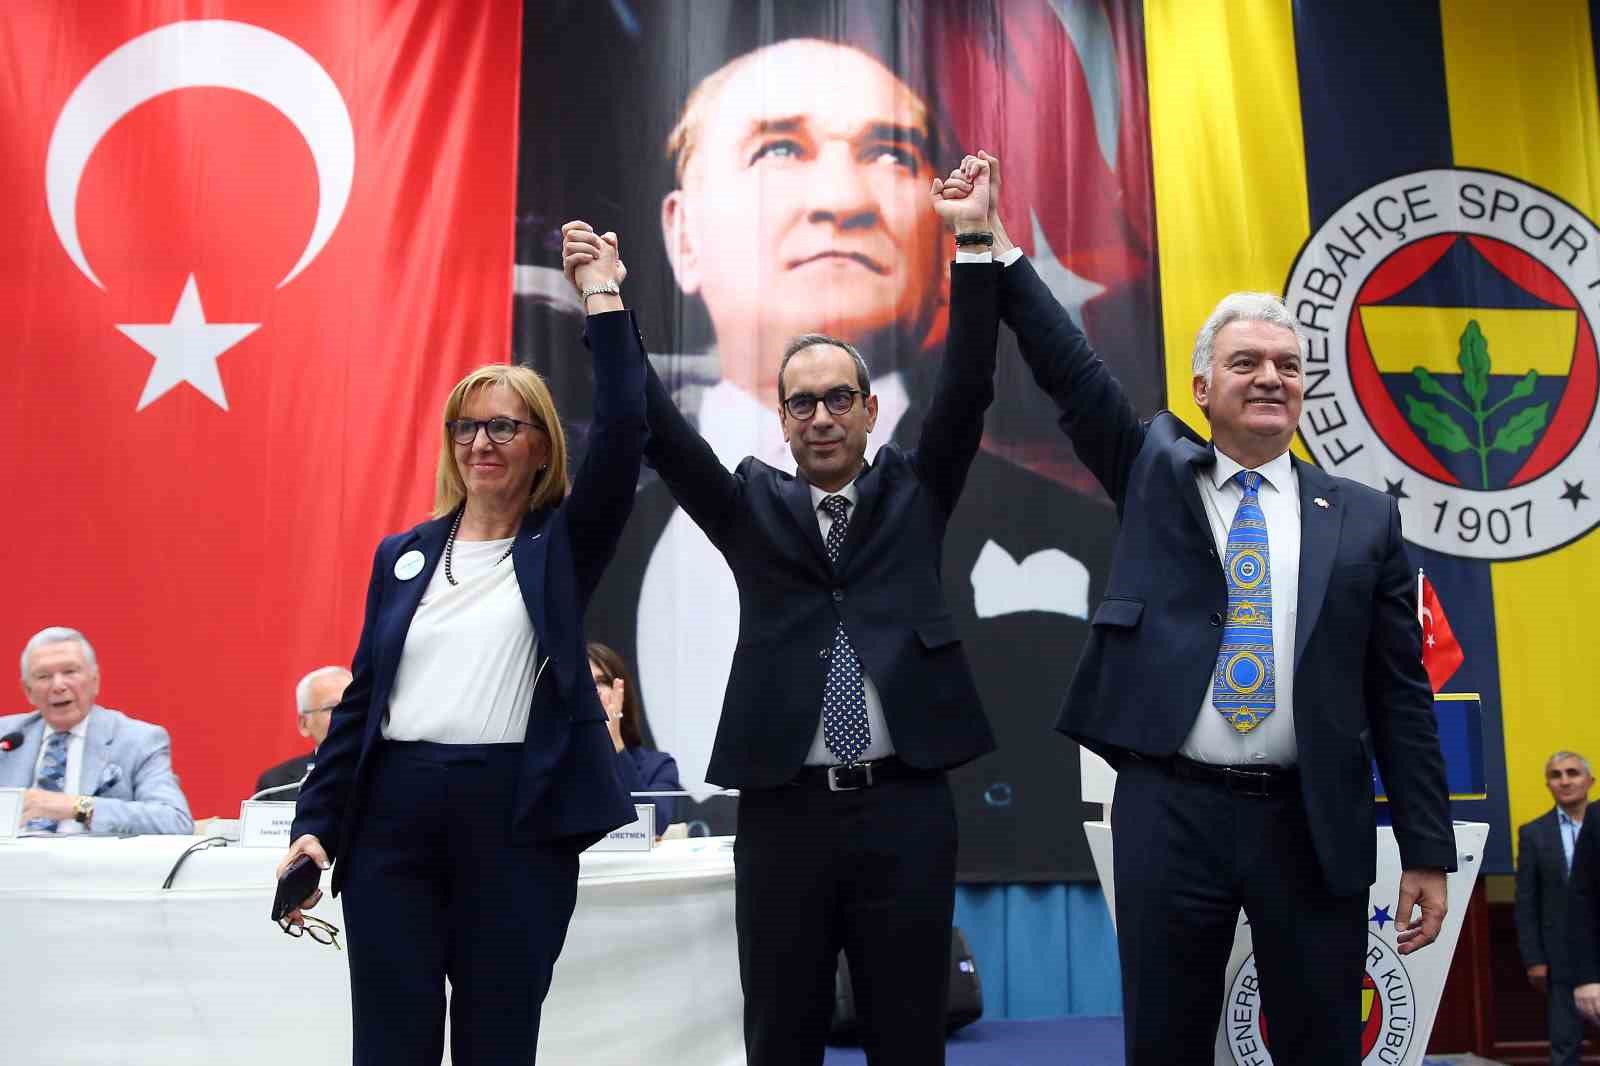 Şekip Mosturoğlu, Fenerbahçe Yüksek Divan Kurulu Başkanı seçildi